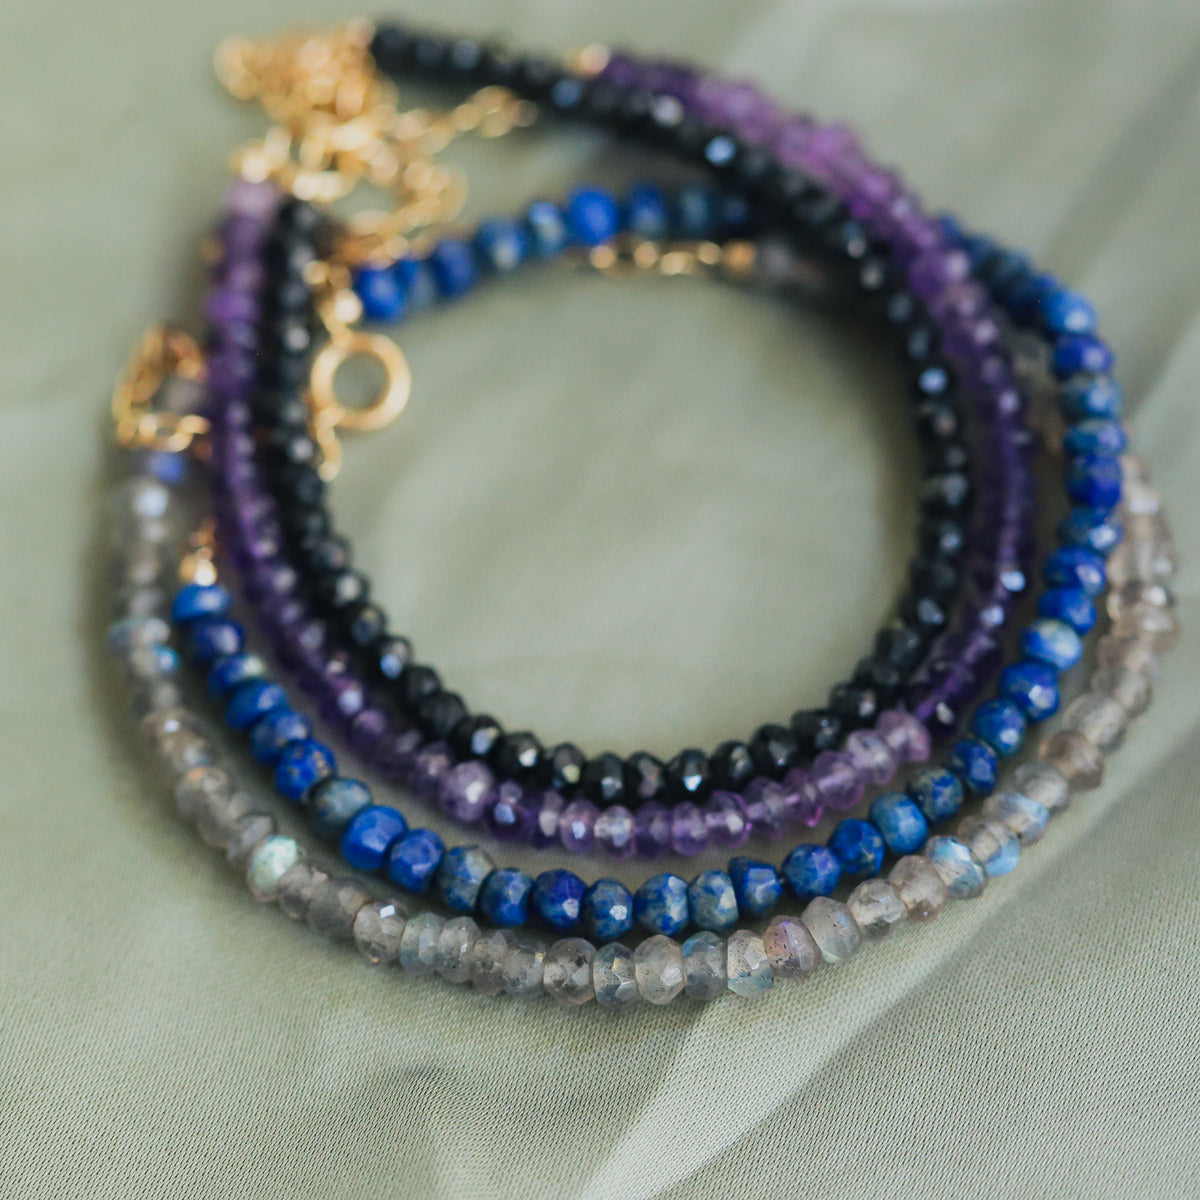 Lapis Lazuli Adjustable Bracelet - 14K gold filled